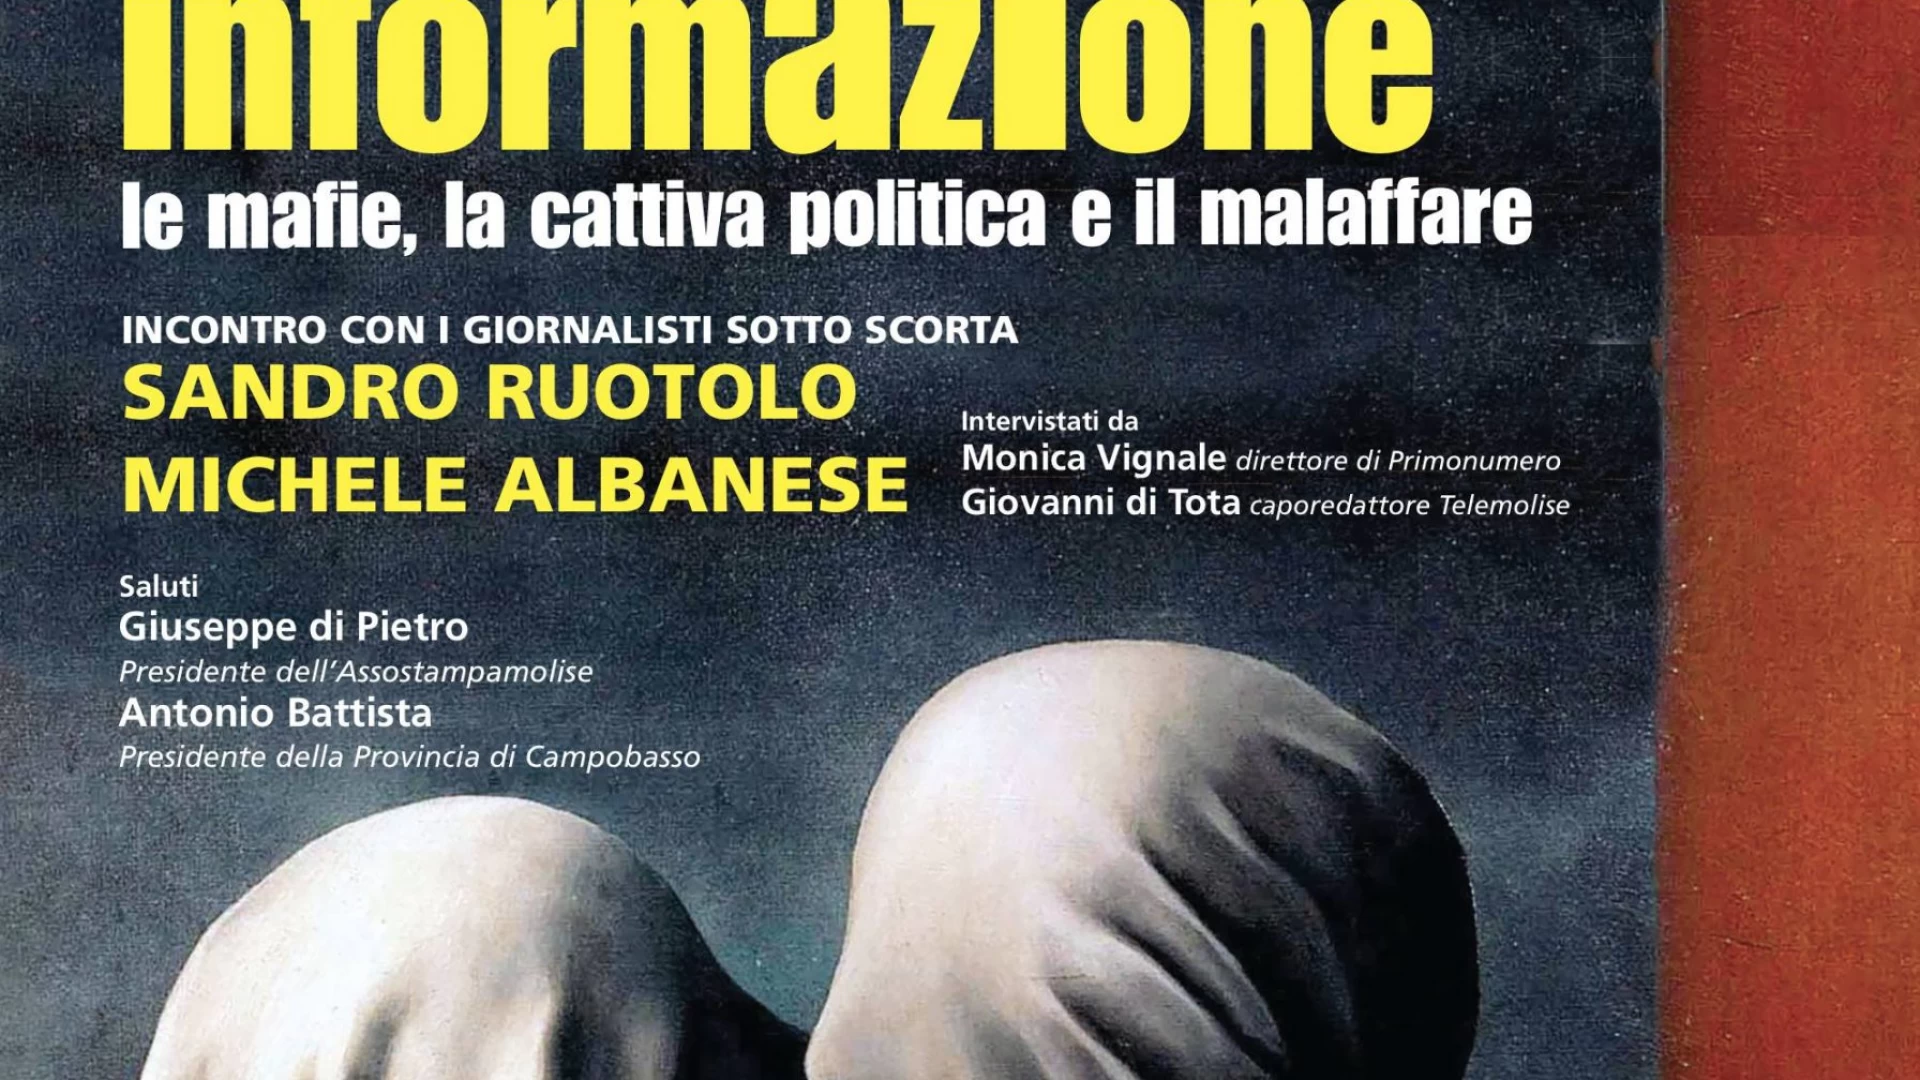 La Mafia, le querele e i fondi cancellati: l’informazione sotto attacco secondo Sandro Ruotolo e Michele Albanese.